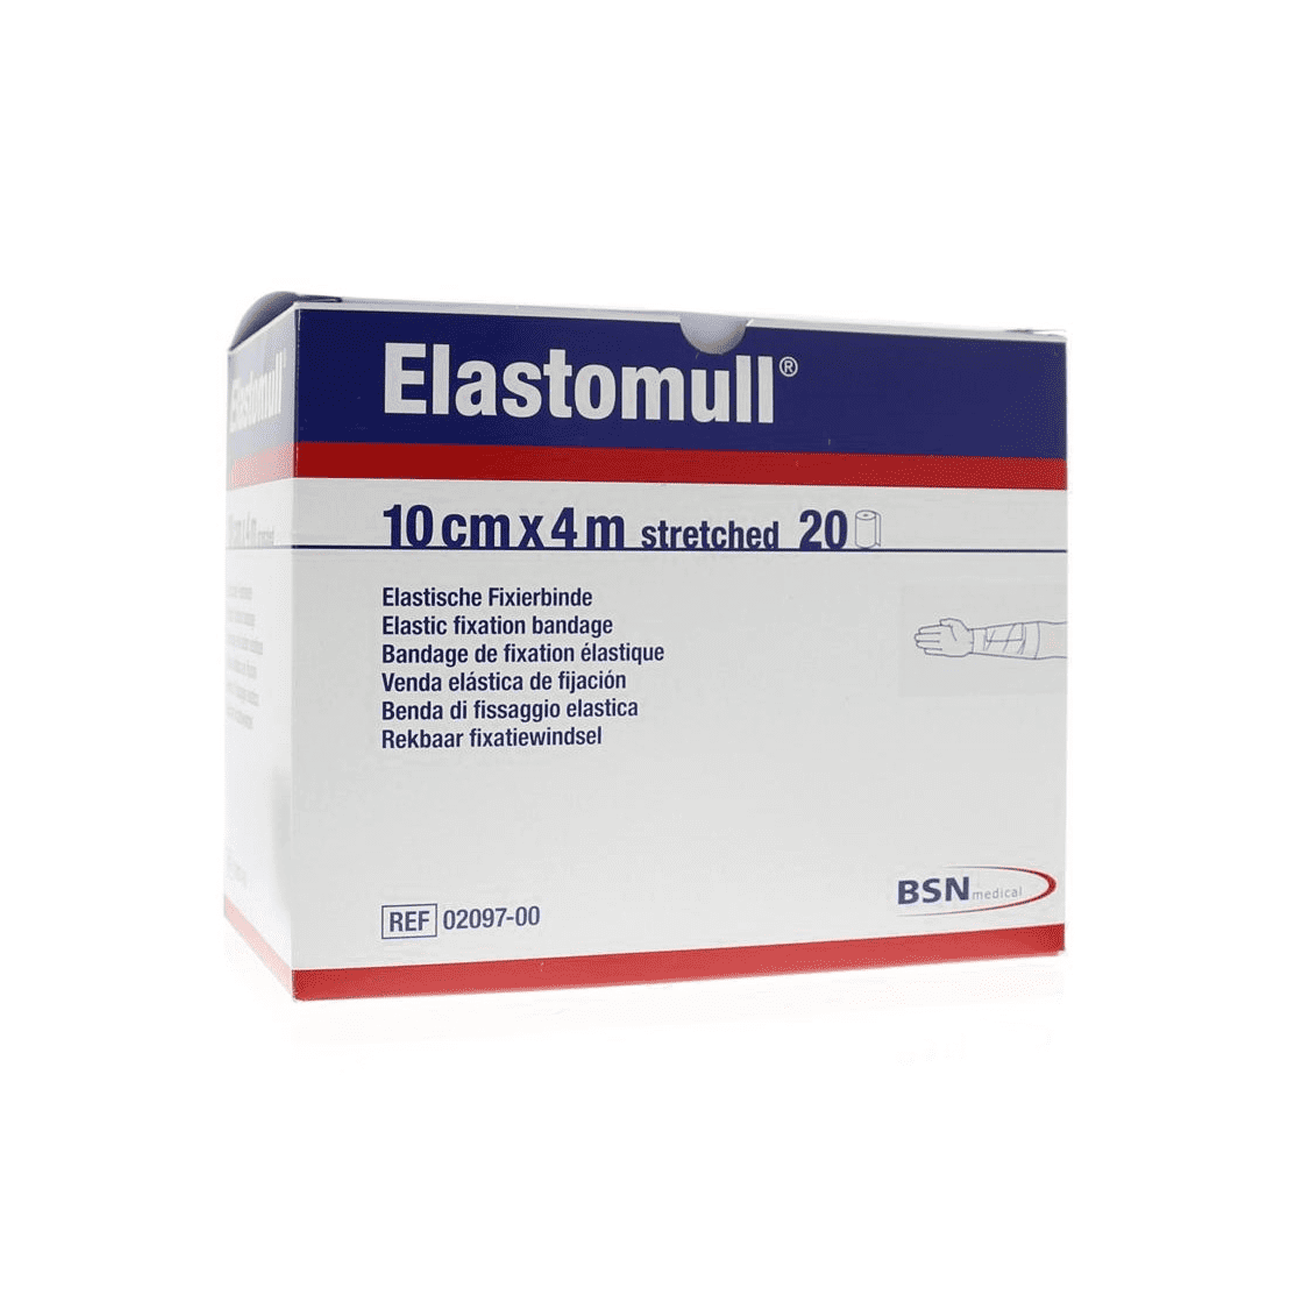 Elastomull 10 Cm X 4 M Gecellofaneerd (20 Stuks)